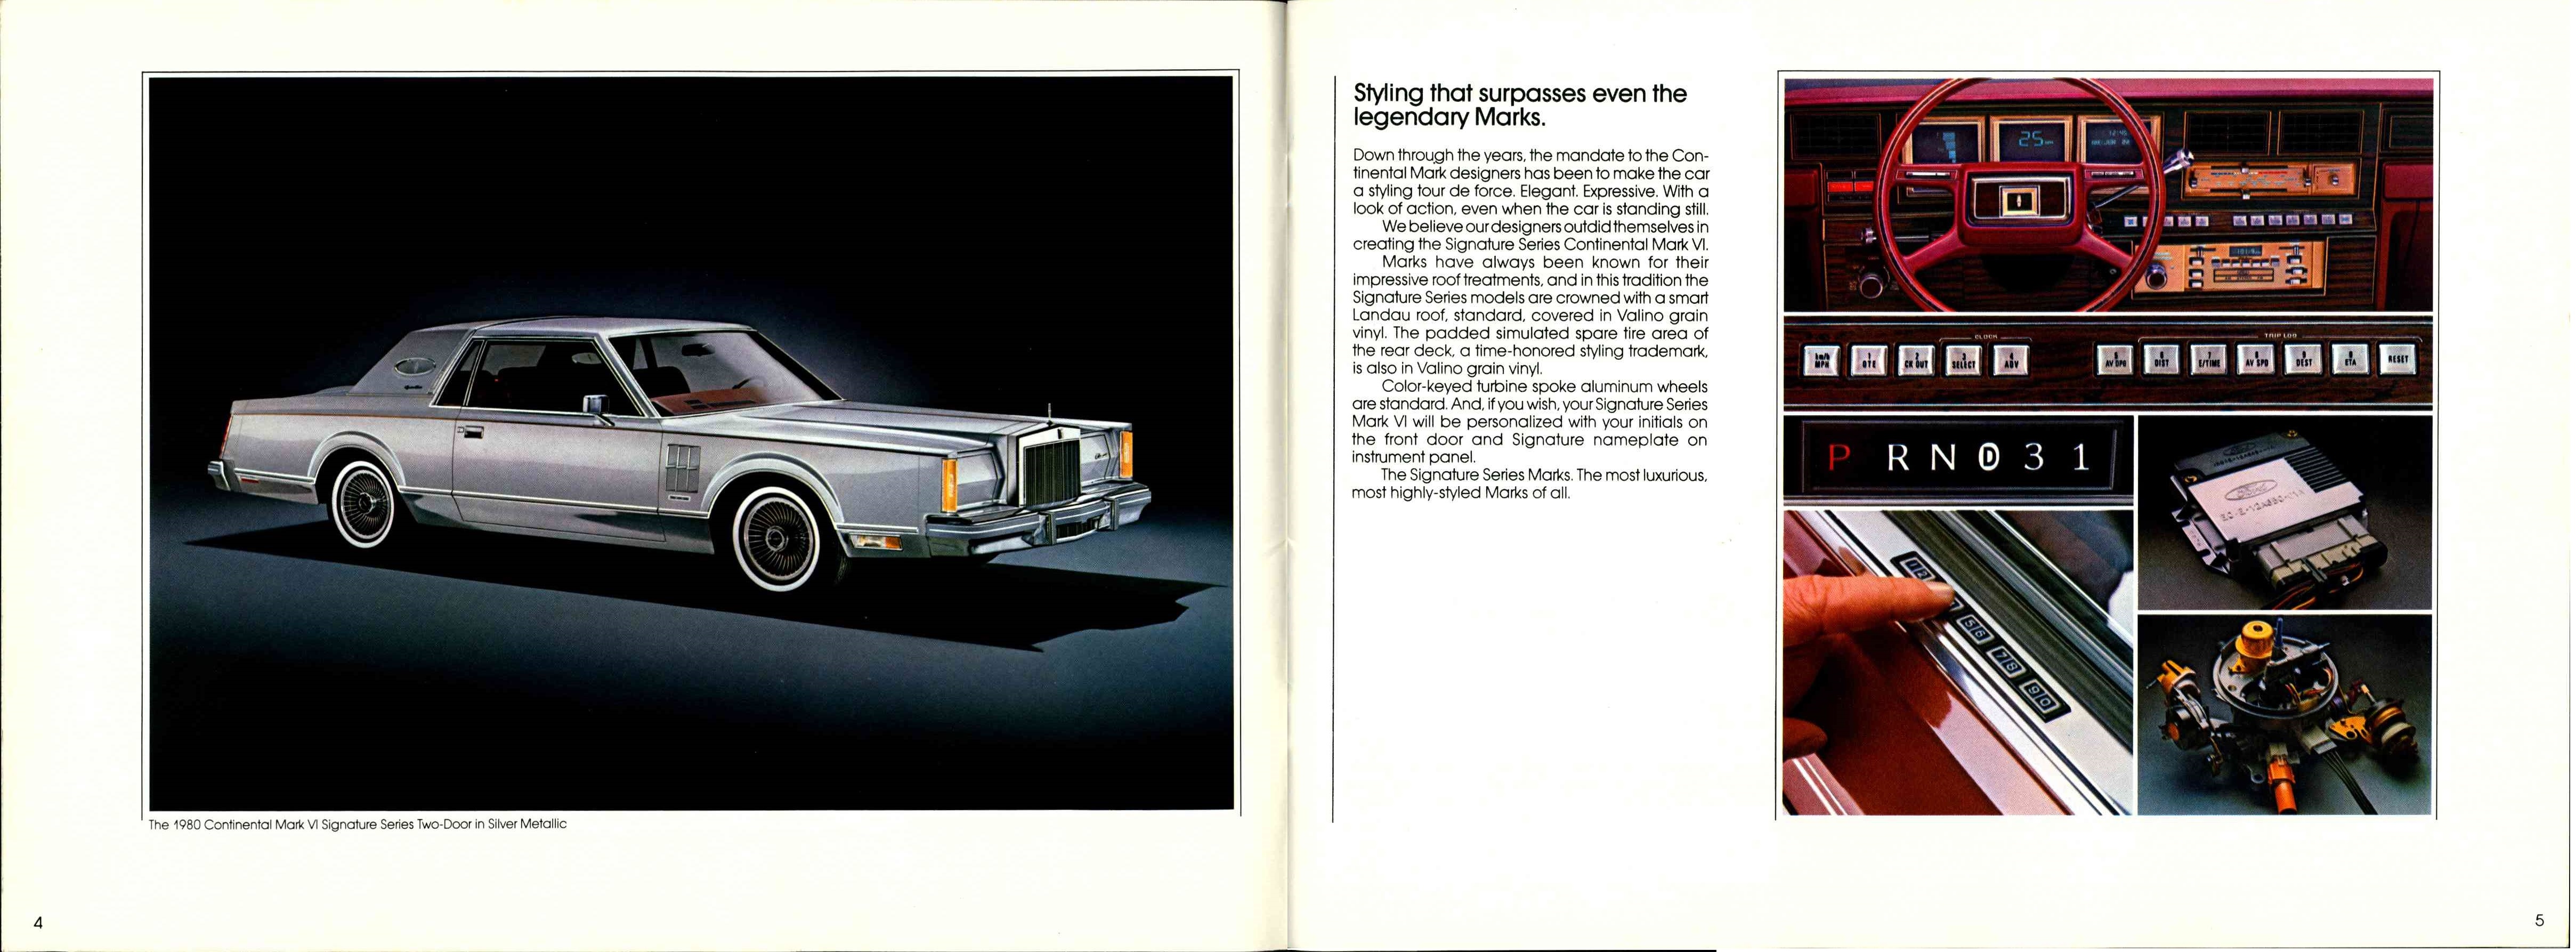 1980 Lincoln Continental Mark VI  04-05a